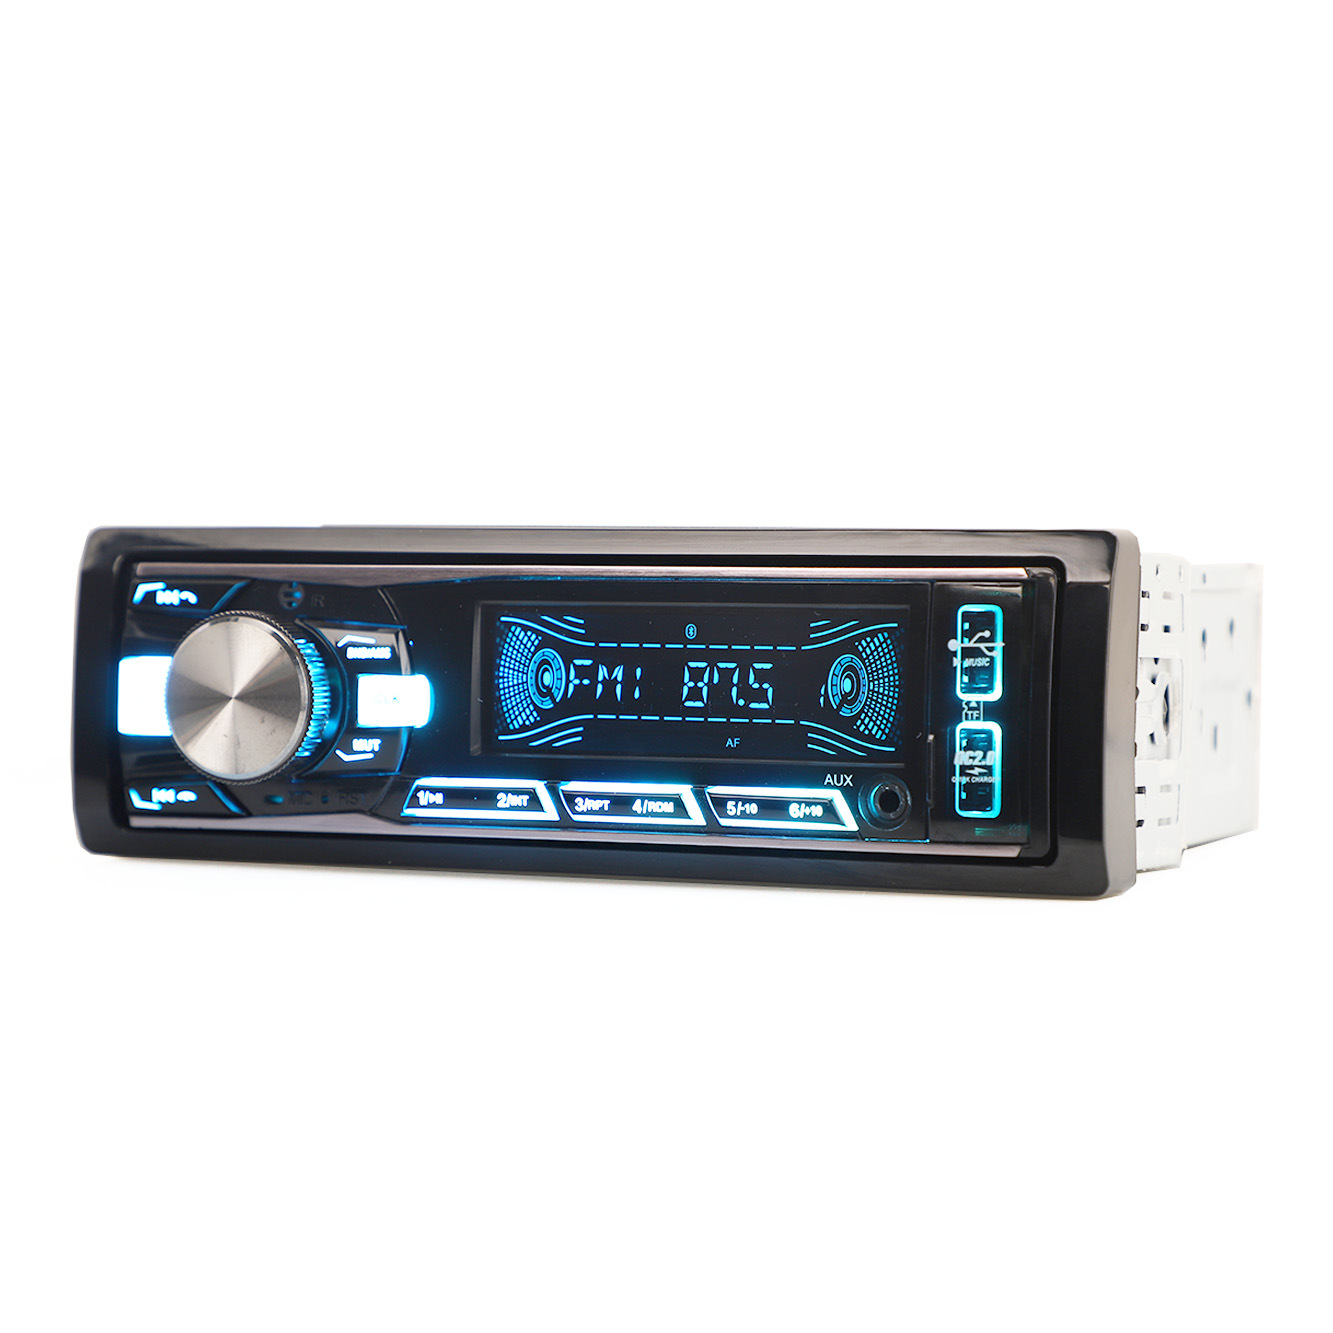 Авто аудио с фиксированной панелью, MP3-плеер, аудио, автомобильная стереосистема, автомобильный аудиоплеер с одним DIN, автомобильный плеер